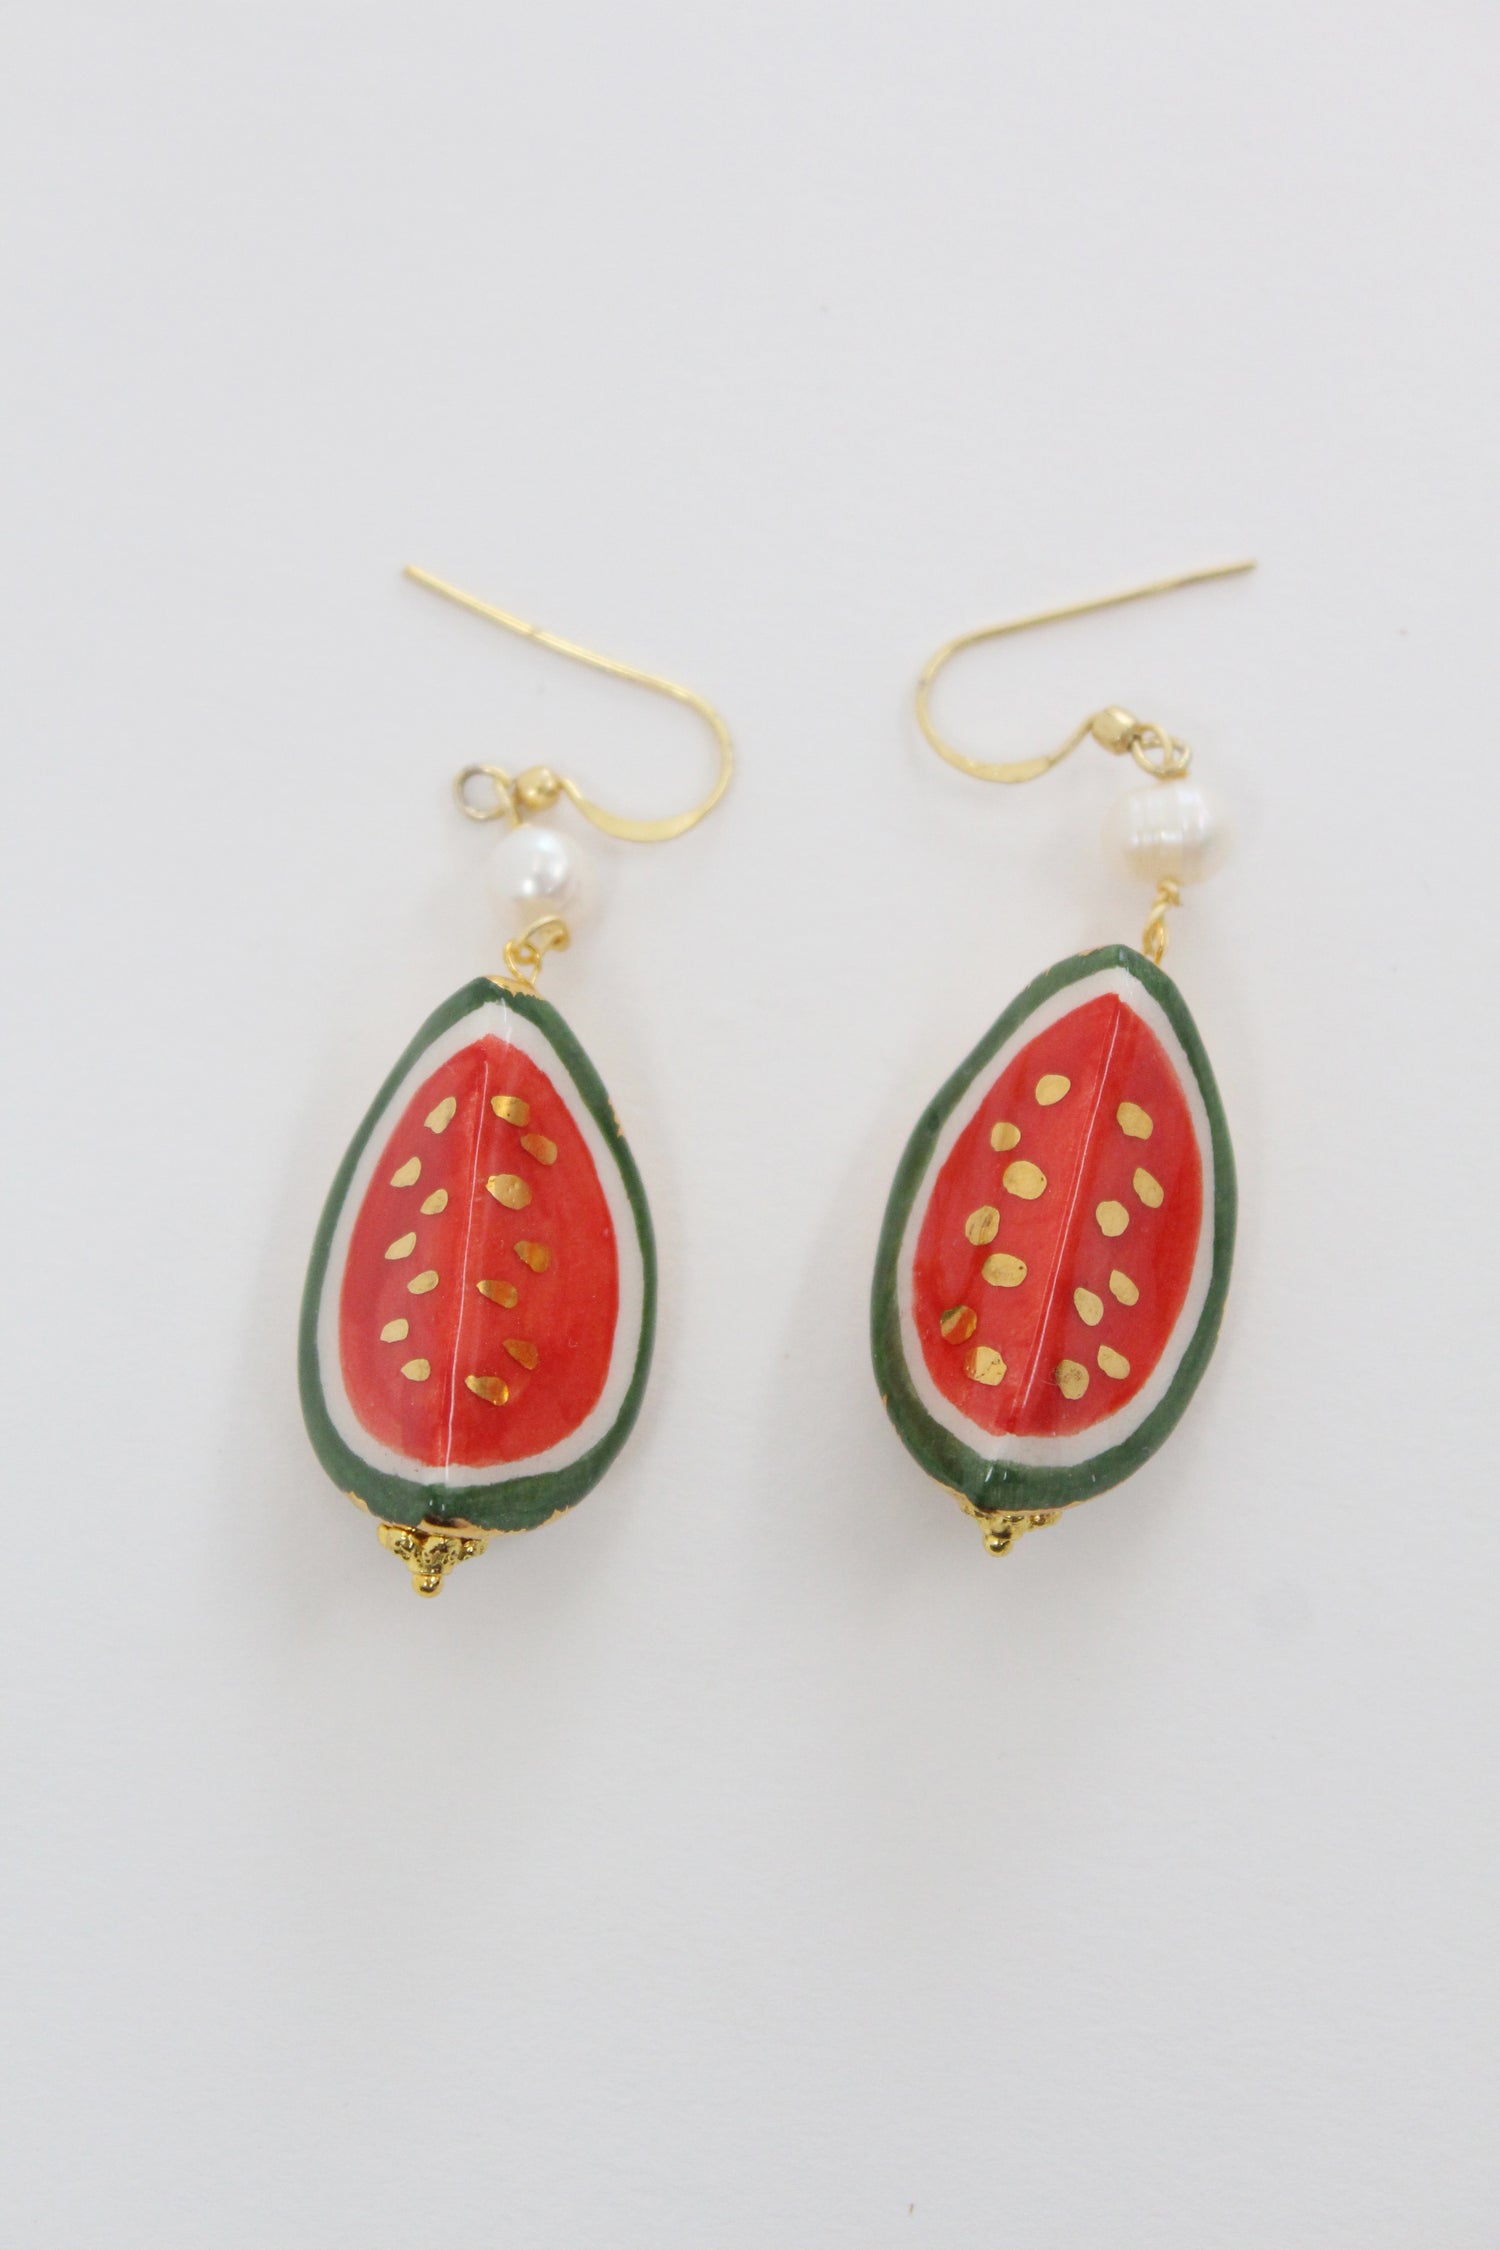 Italian Hand Painted Ceramic Earrings Watermelon